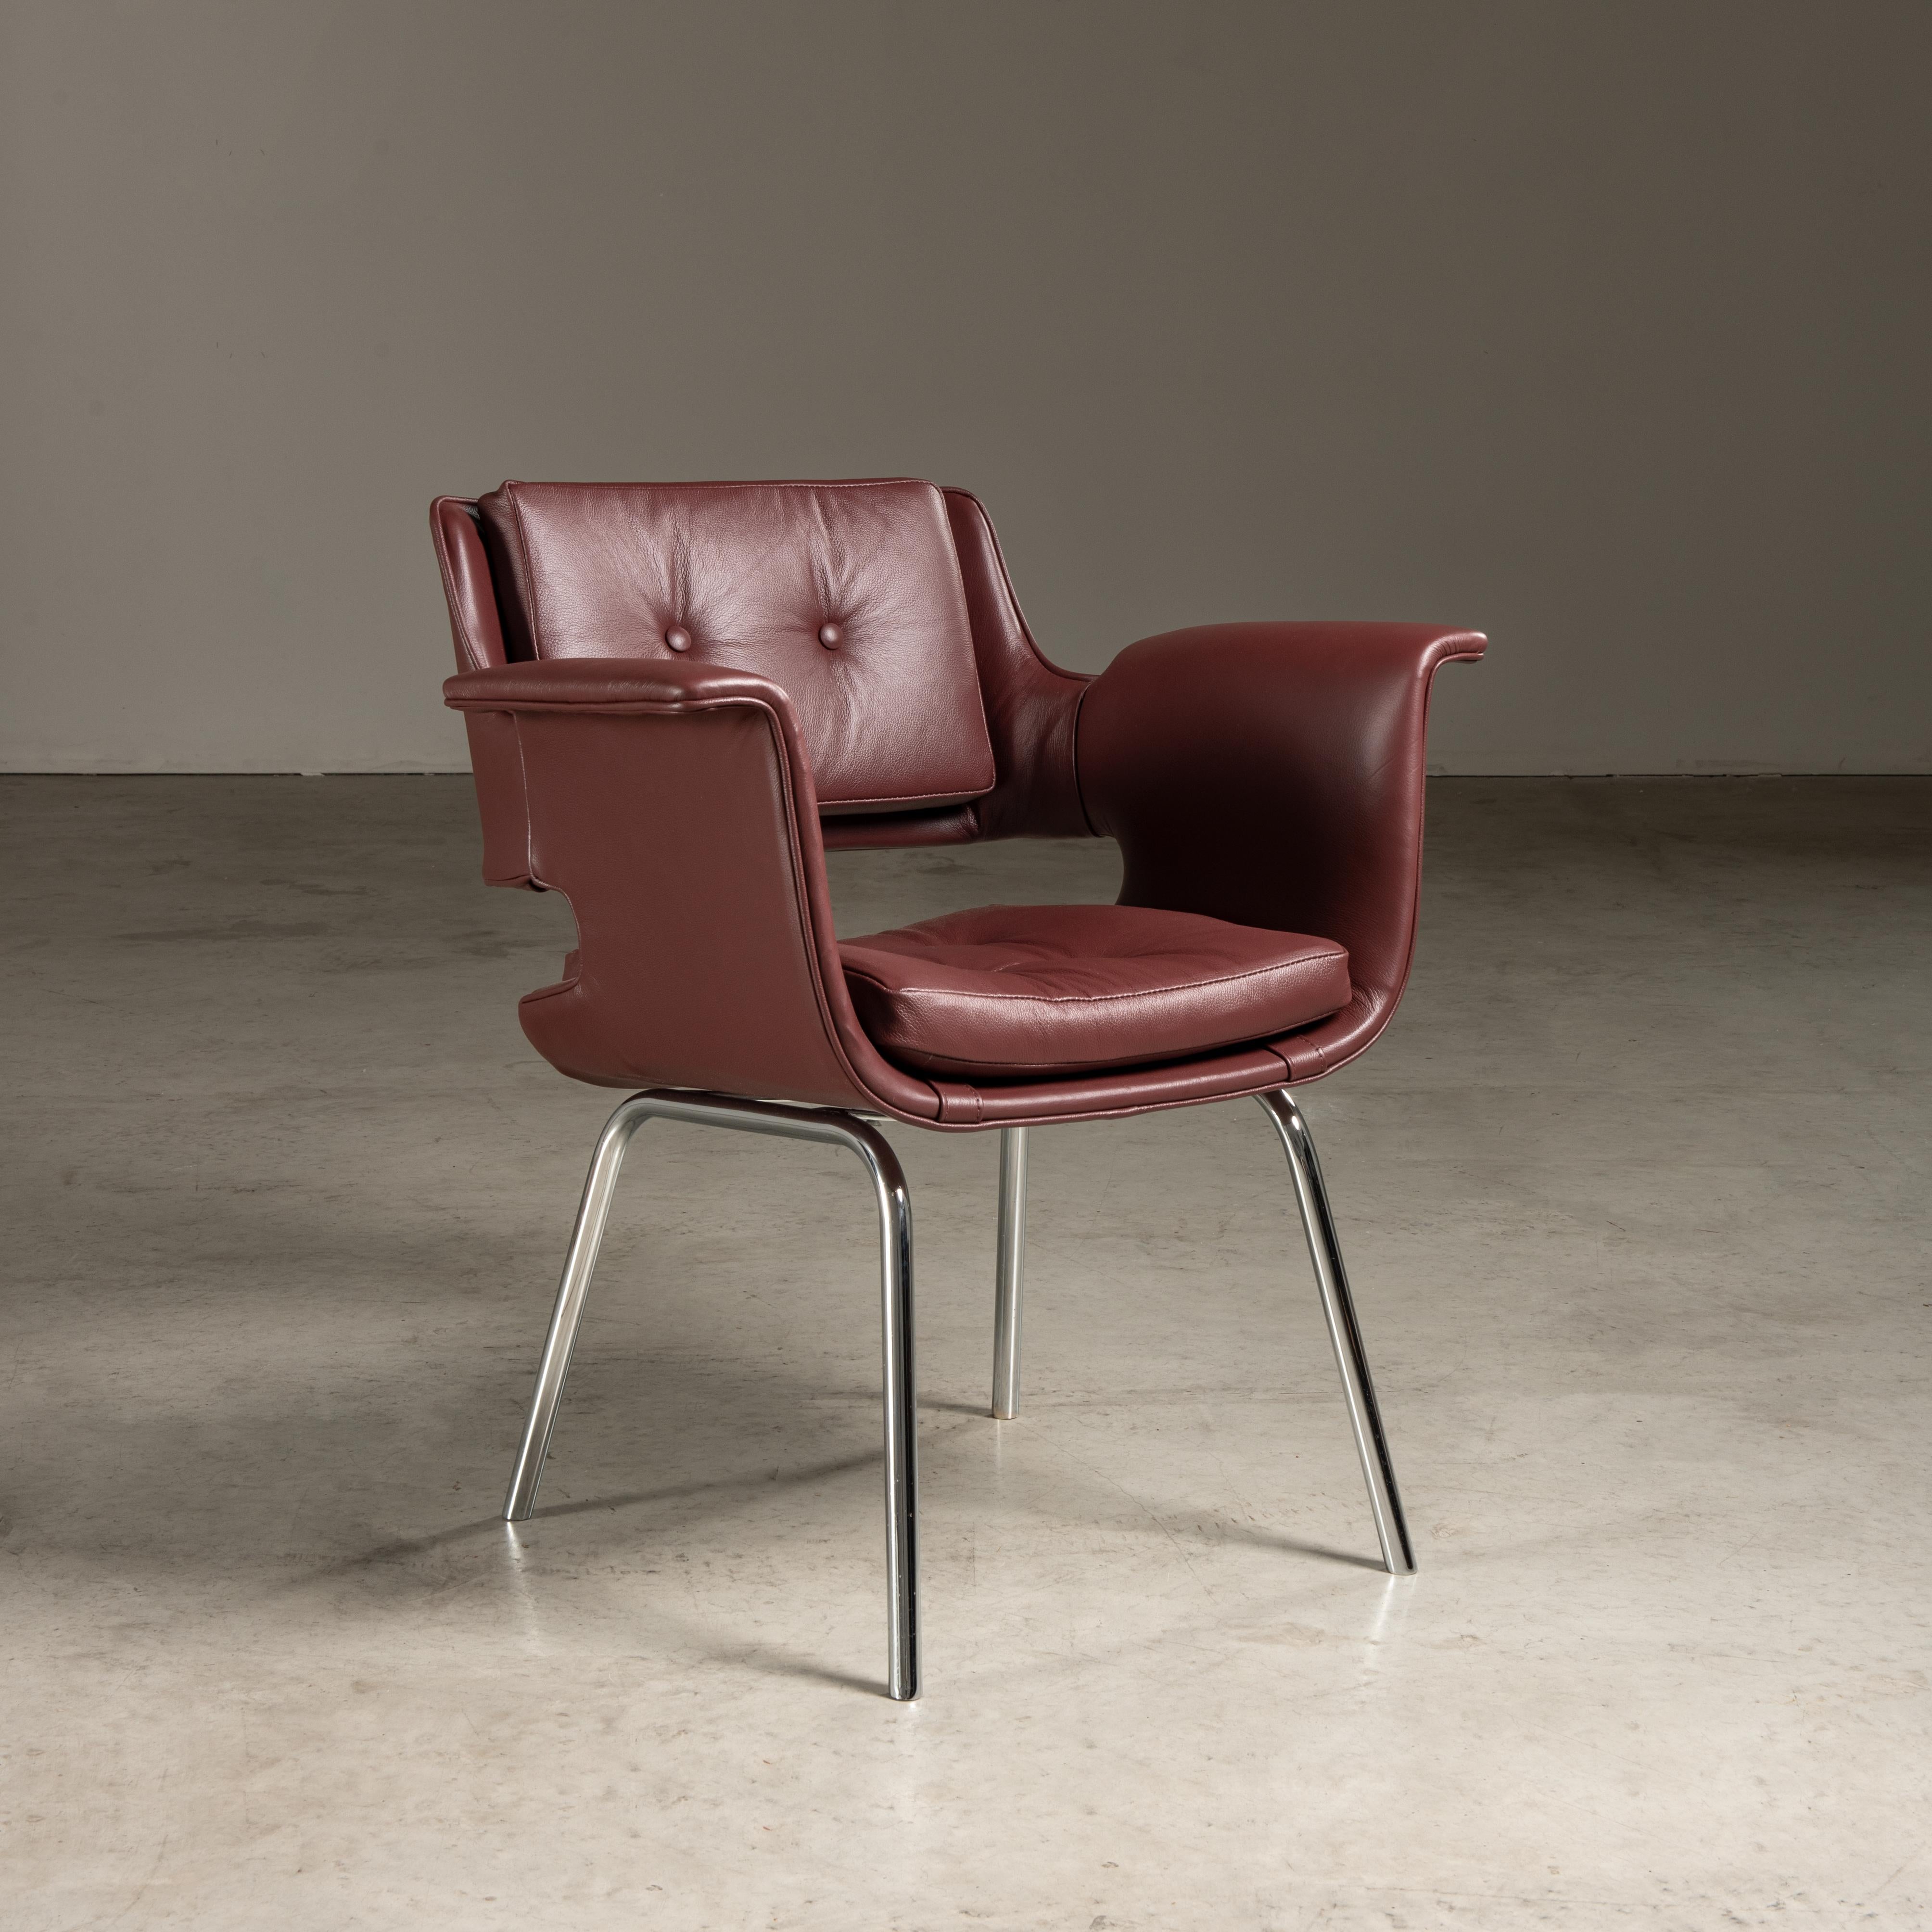 Dieser Stuhl ist ein Beispiel für brasilianisches Design aus der Mitte des 20. Jahrhunderts und wird dem geschickten, aber unterschätzten Carlo Fongaro zugeschrieben. Seine Arbeiten spiegeln die modernistischen Tendenzen der Epoche wider und